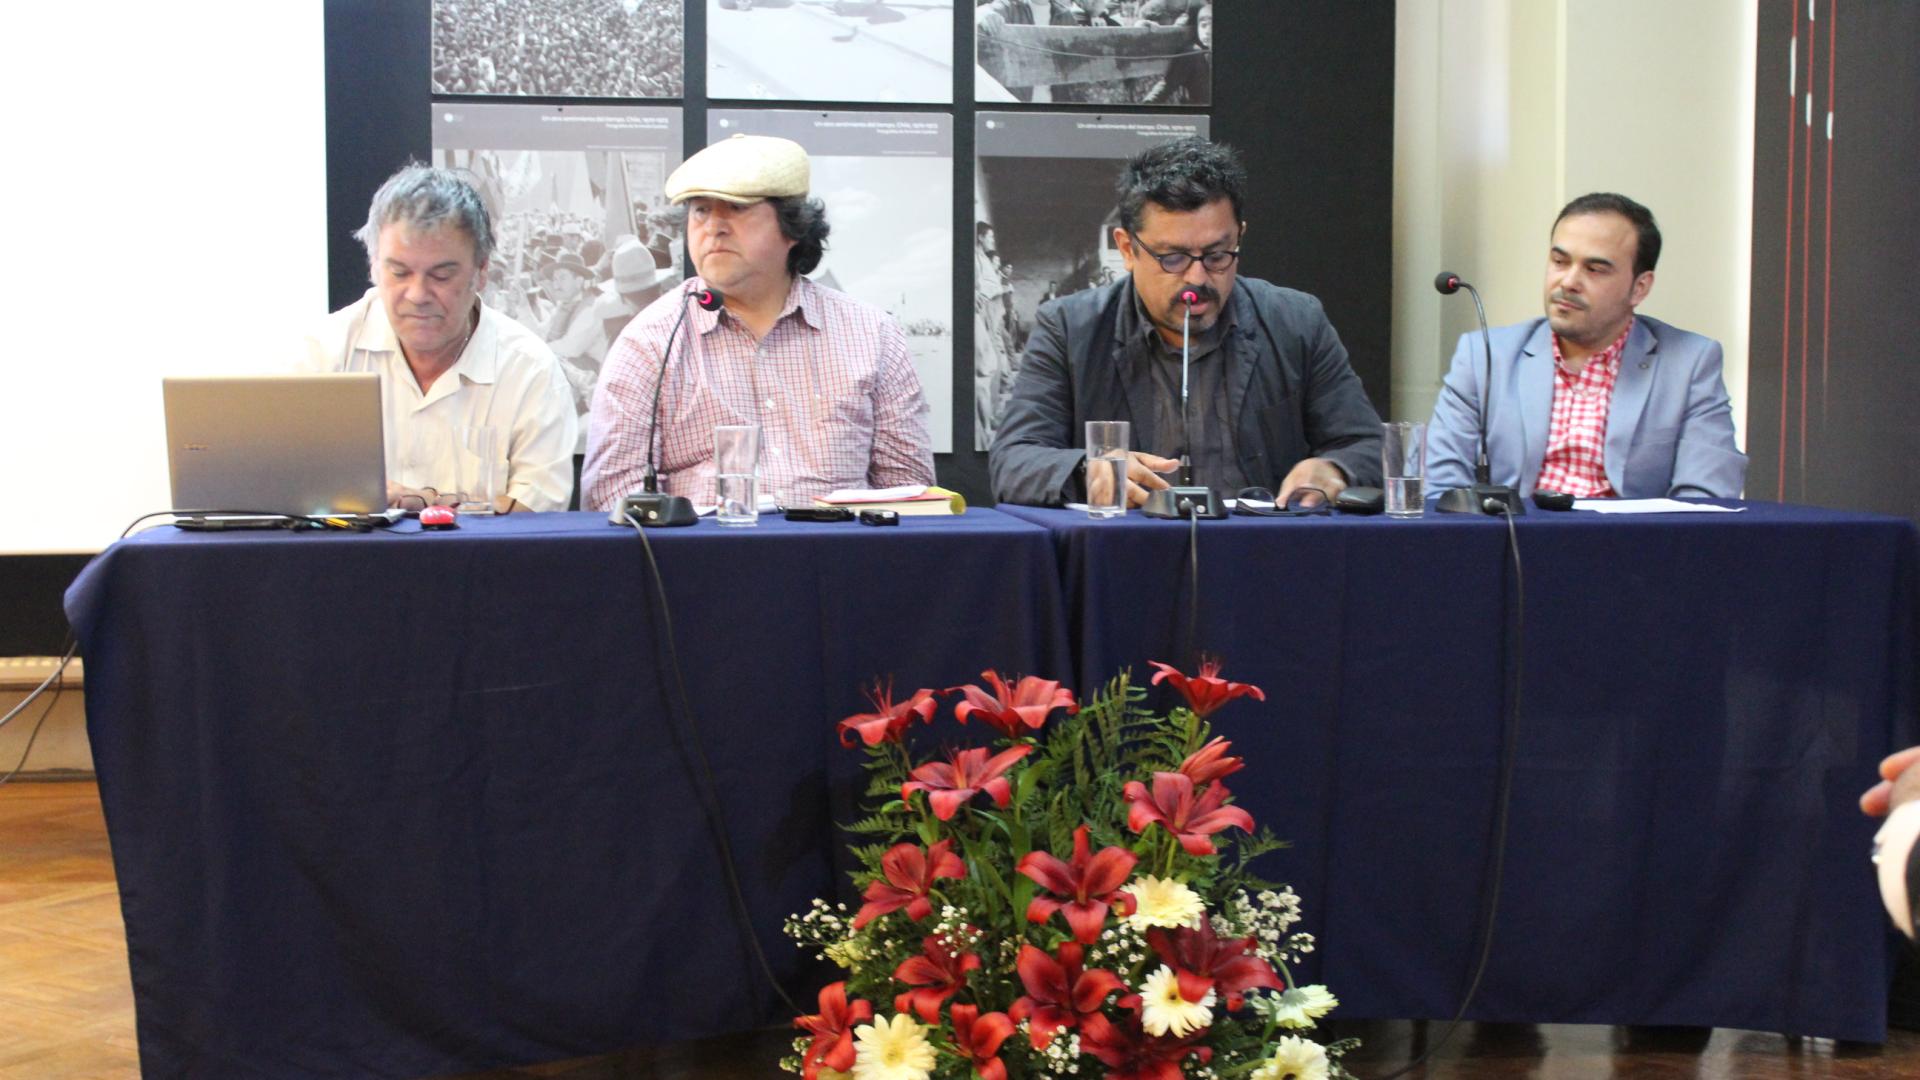 José Días Universidad Católica de Temuco, Martín Correa Historiador, Álvaro Bello Universidad de la Frontera.